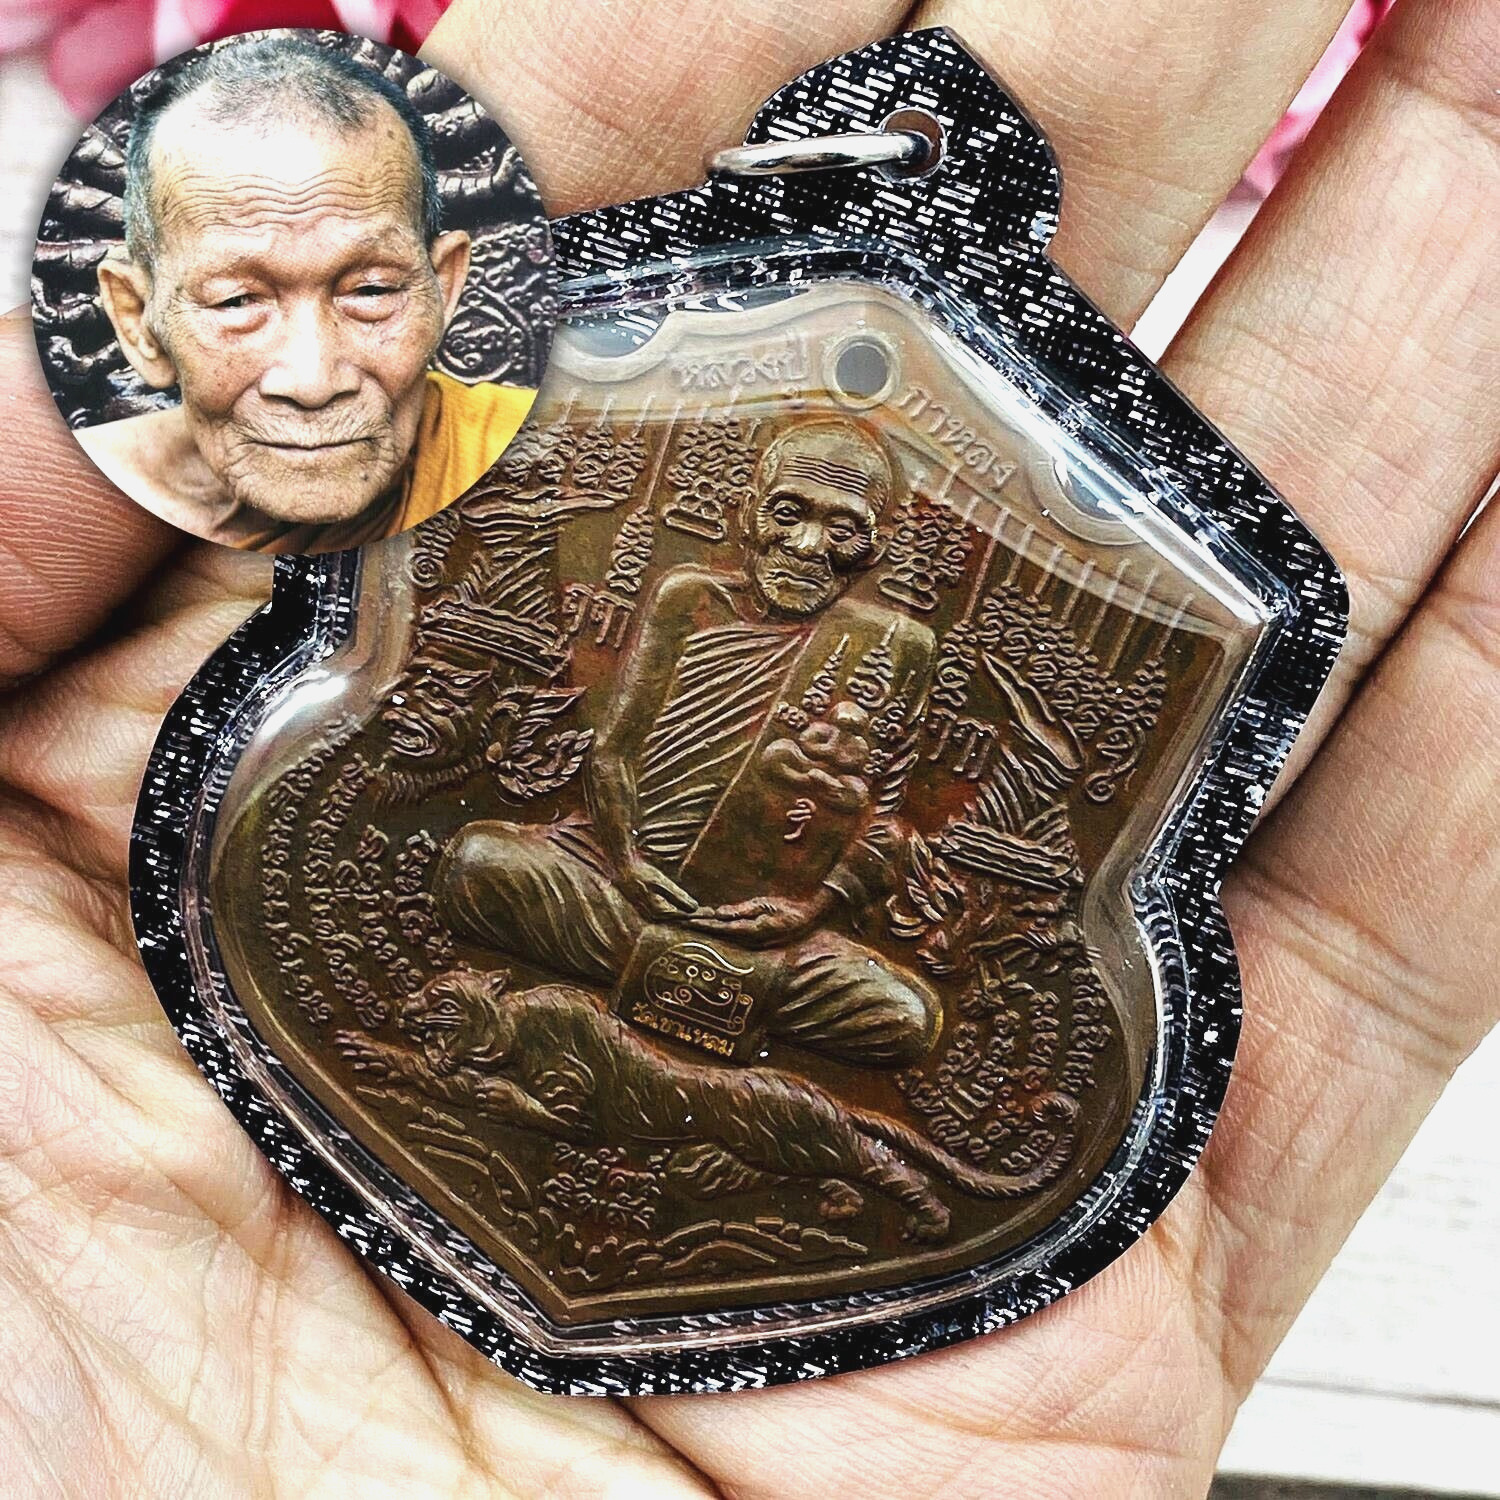 Large Medal Payak 5 Tiger Lp Kalong Be2551 Nawa Nammol Water Thai Amulet #17226